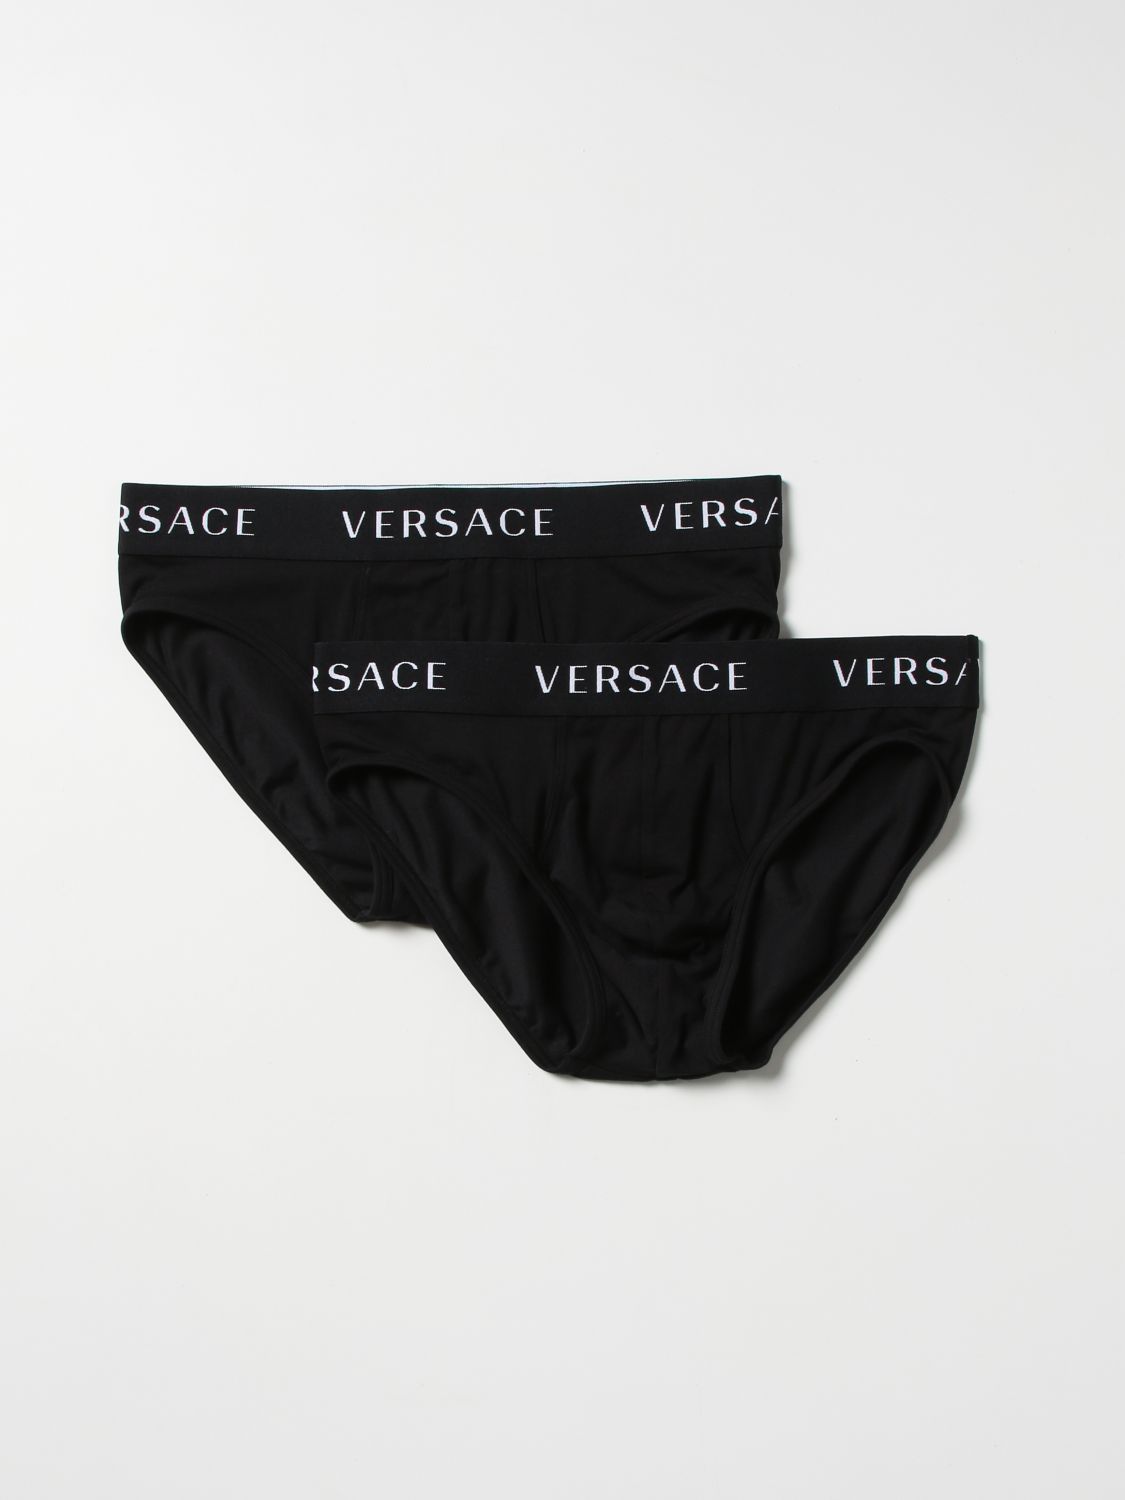 언더웨어 베르사체: 언더웨어 Versace 남성 블랙 1